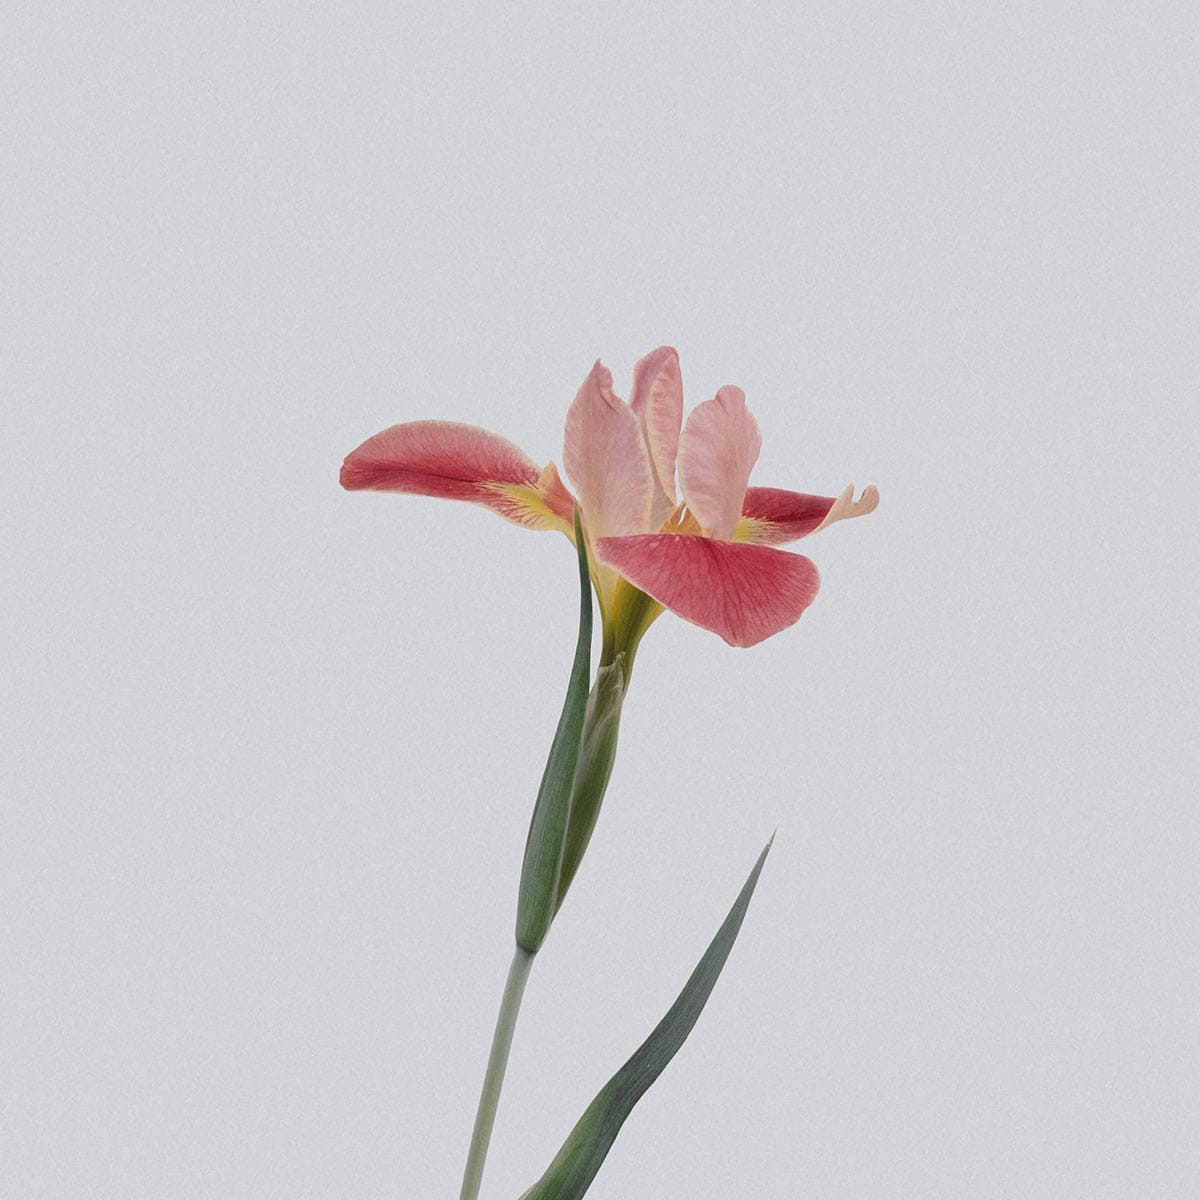 a pink iris flower